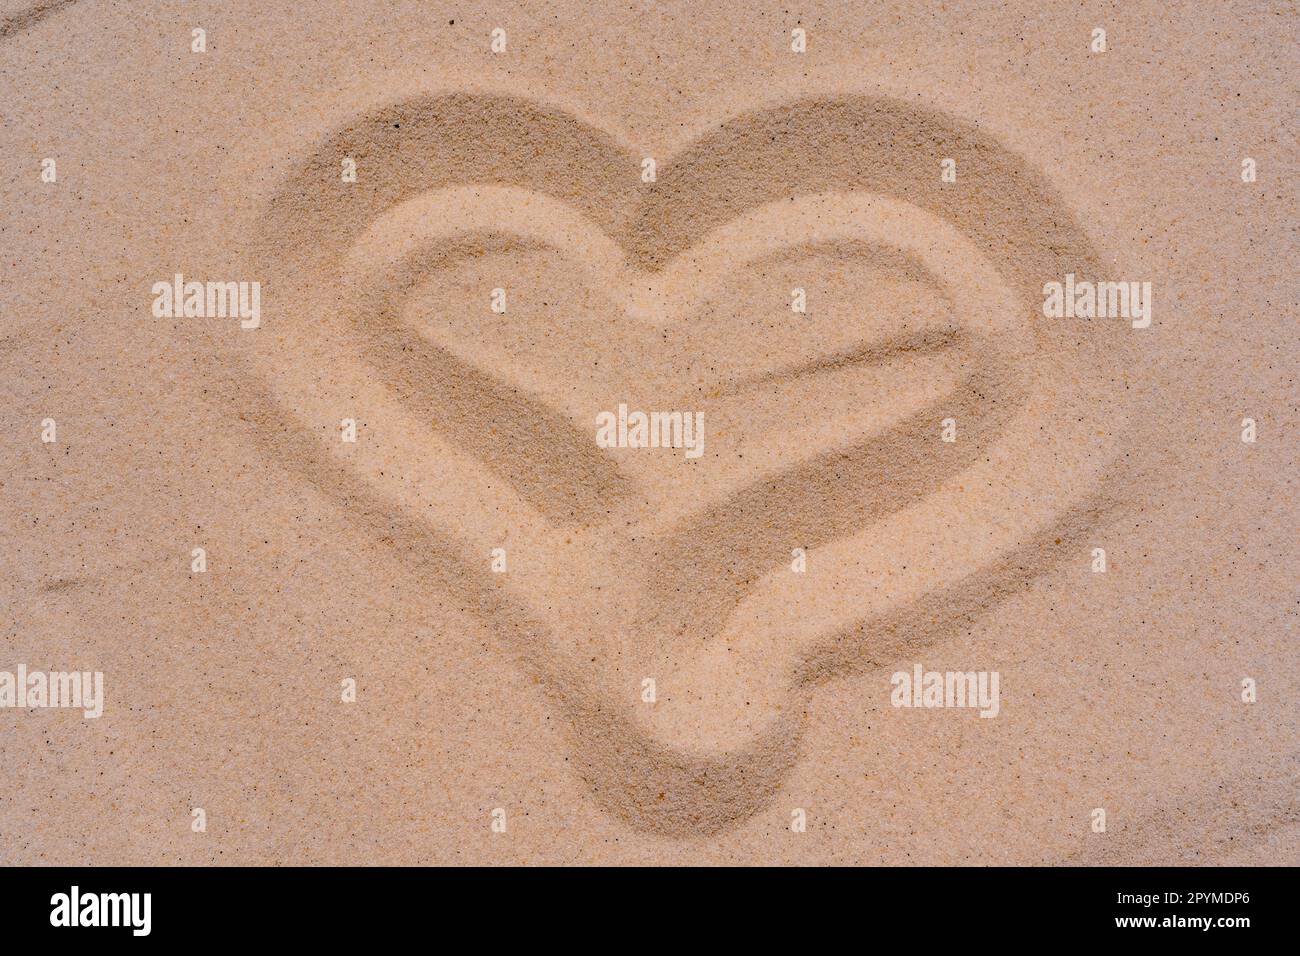 Makro-Nahaufnahme der Sandtextur mit einem Finger-gezogenen Herz. Hintergrund aus feinem Sand. Fotos in hoher Qualität Stockfoto